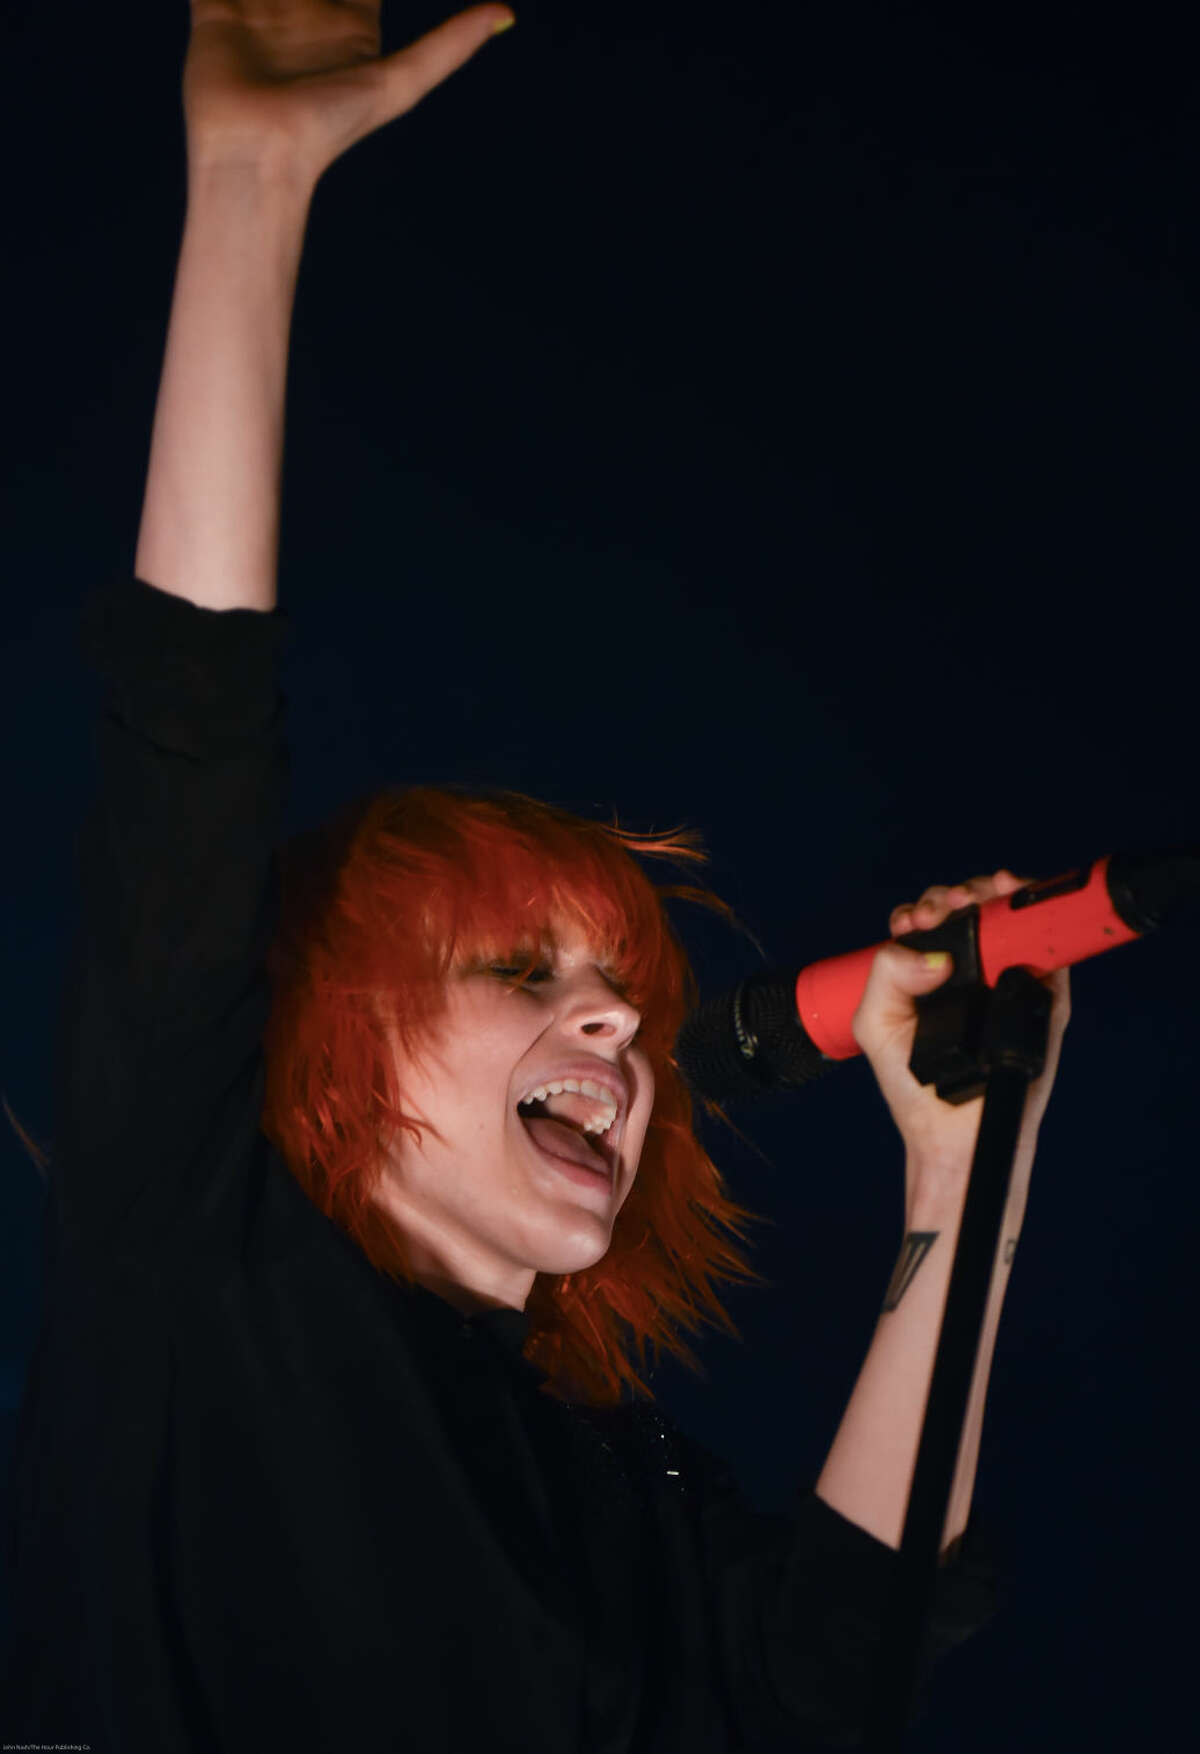 Hour photo/John Nash - The band Paramore played at the Mohegan Sun Arena on Saturday, May 9, 2015.